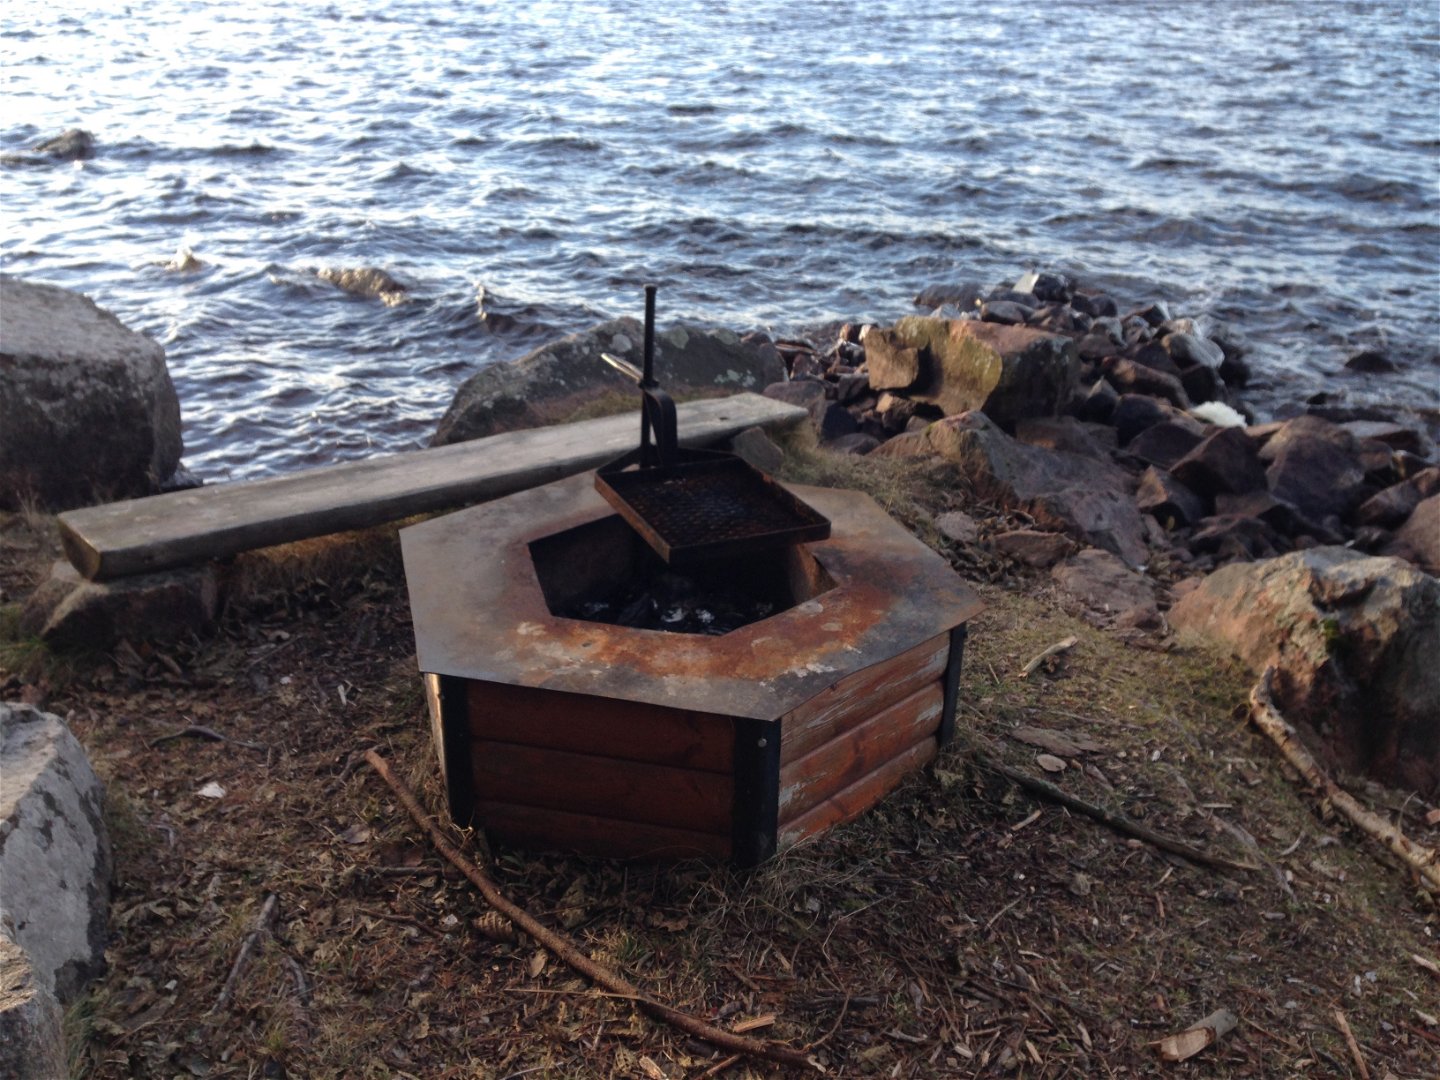 En grillplats med grillgaller och en låg sittbänk bredvid står vid en sjö.